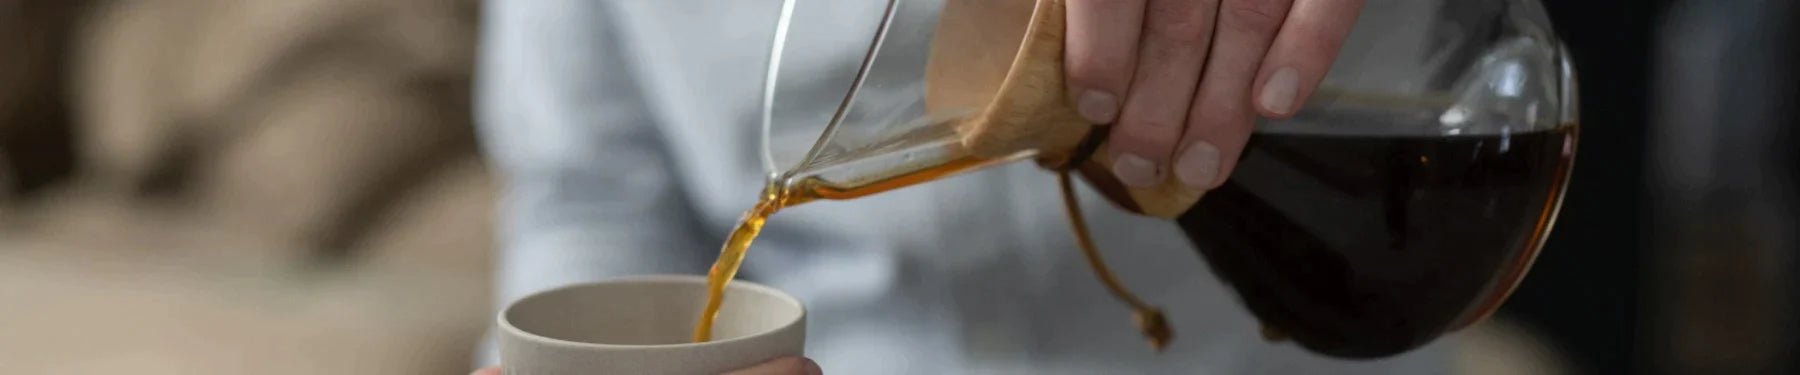 Lindy hælder brygget kaffe op i en kop, lavet på en Chemex håndbrygger.